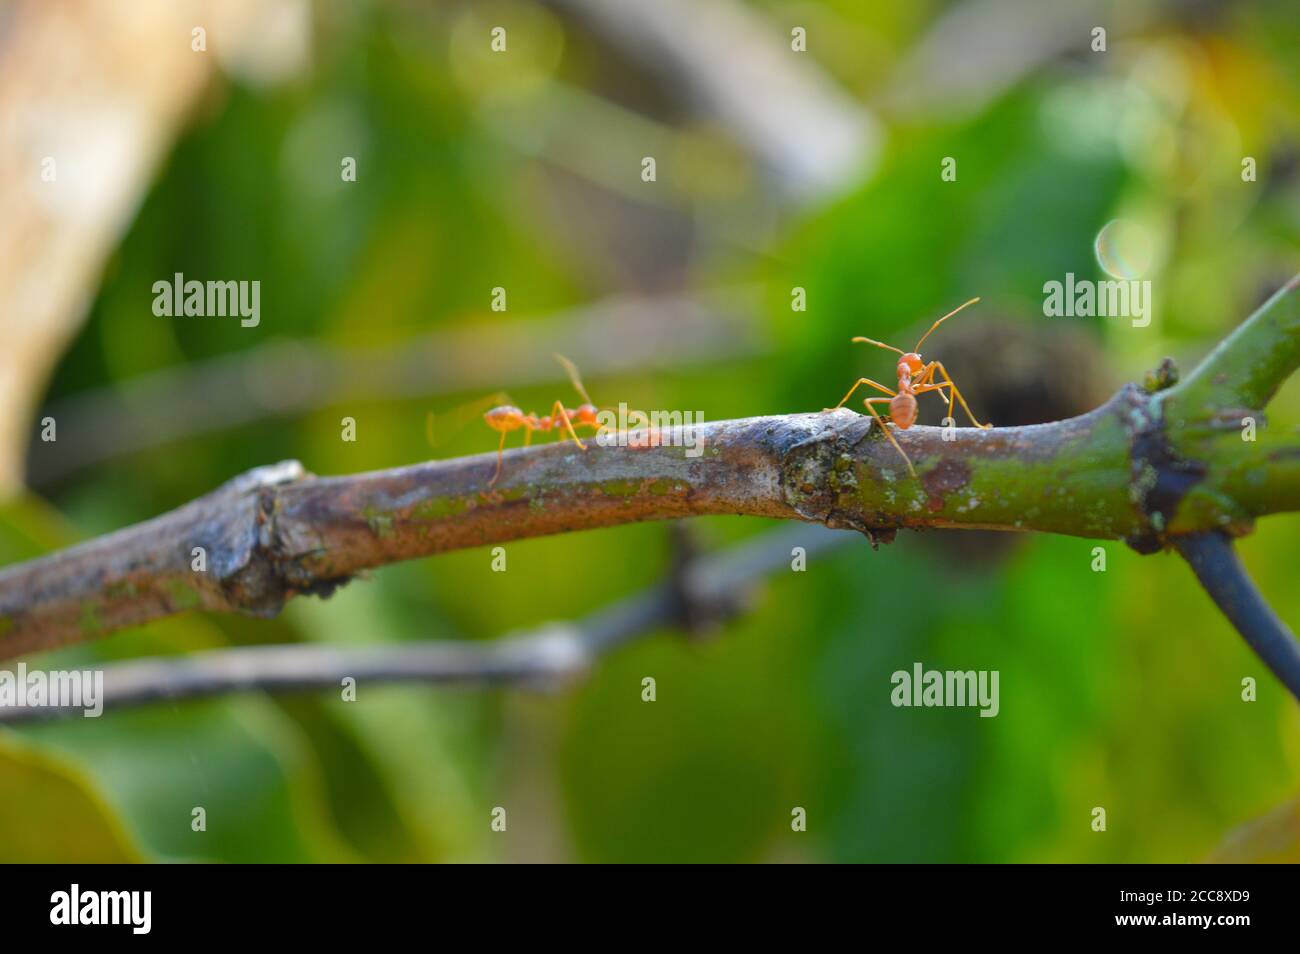 Las hormigas tejedoras son insectos eusociales. Las hormigas tejedoras viven  en árboles y son conocidas por su comportamiento único de construcción de  nidos donde los trabajadores construyen nidos Fotografía de stock -